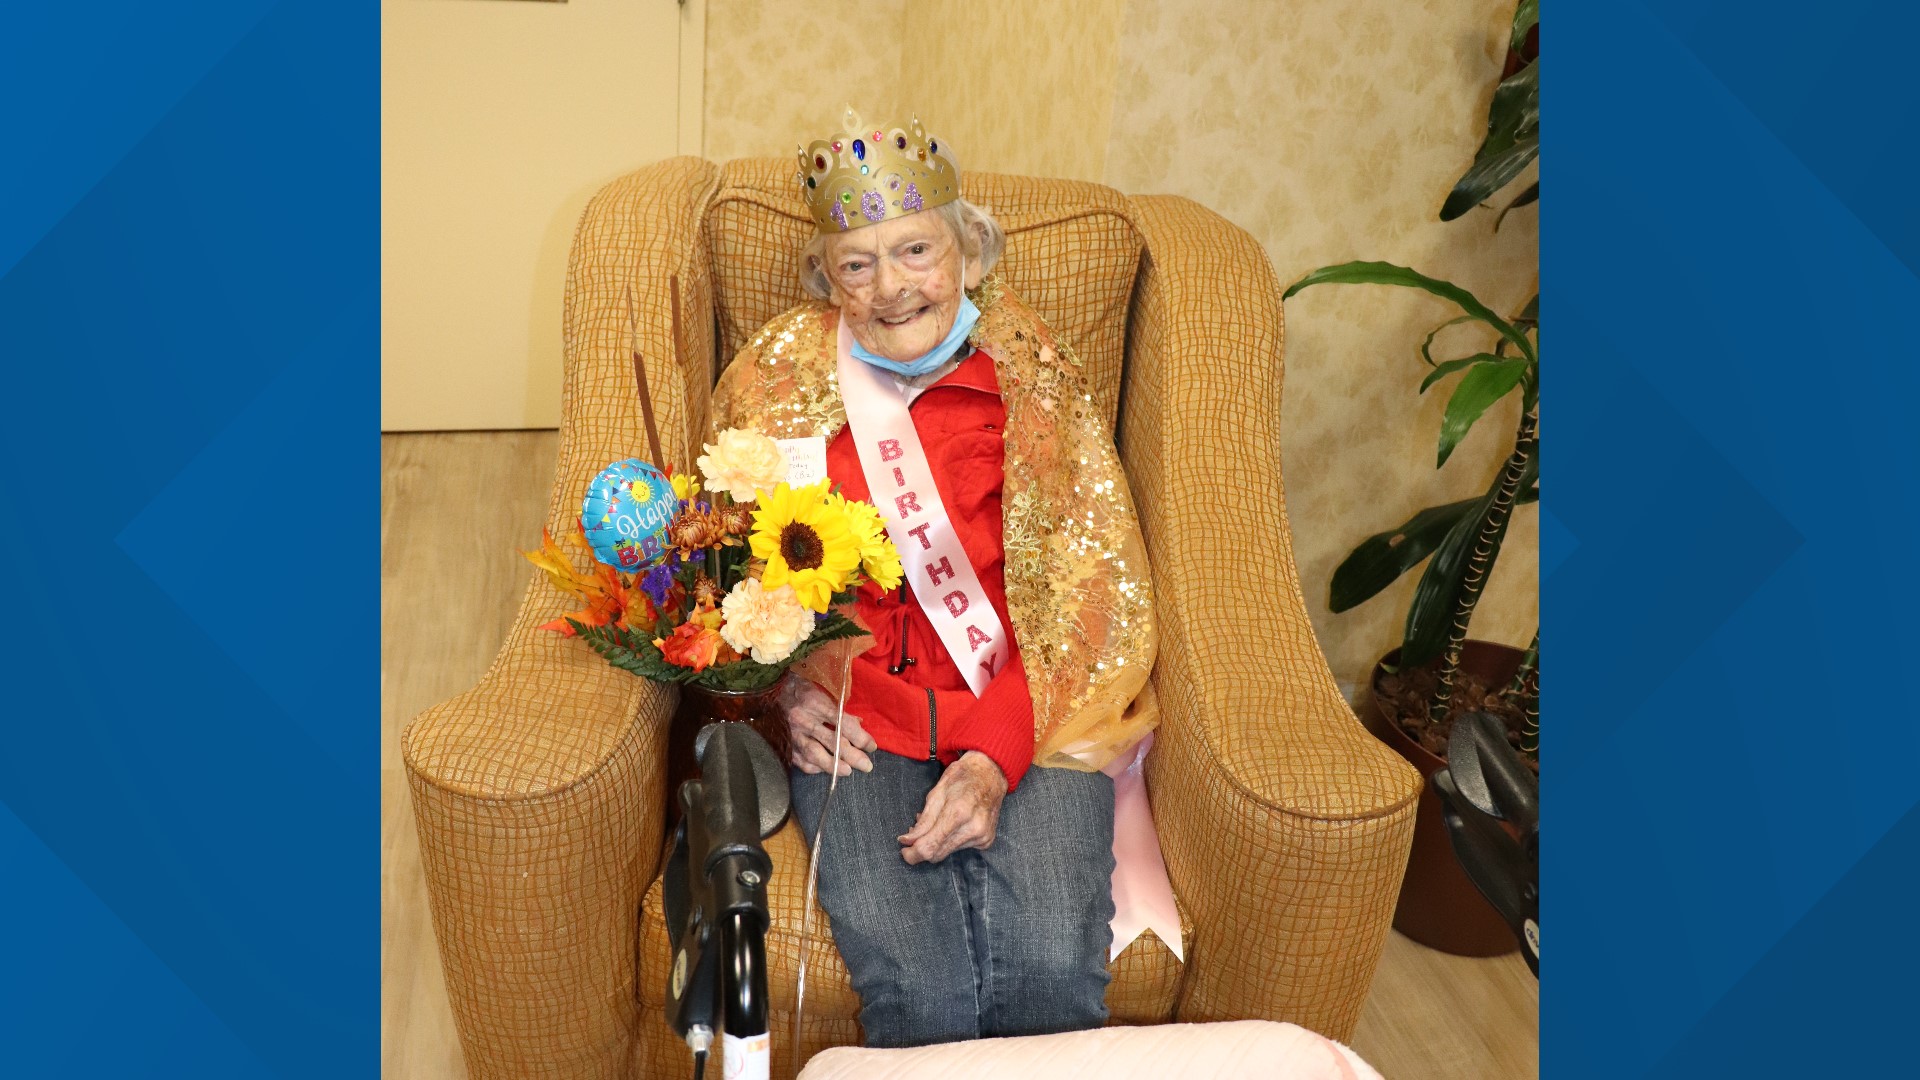 Gladys Trefny celebrated birthday 104 on Monday at St. John's Herr Estate in Lancaster County.